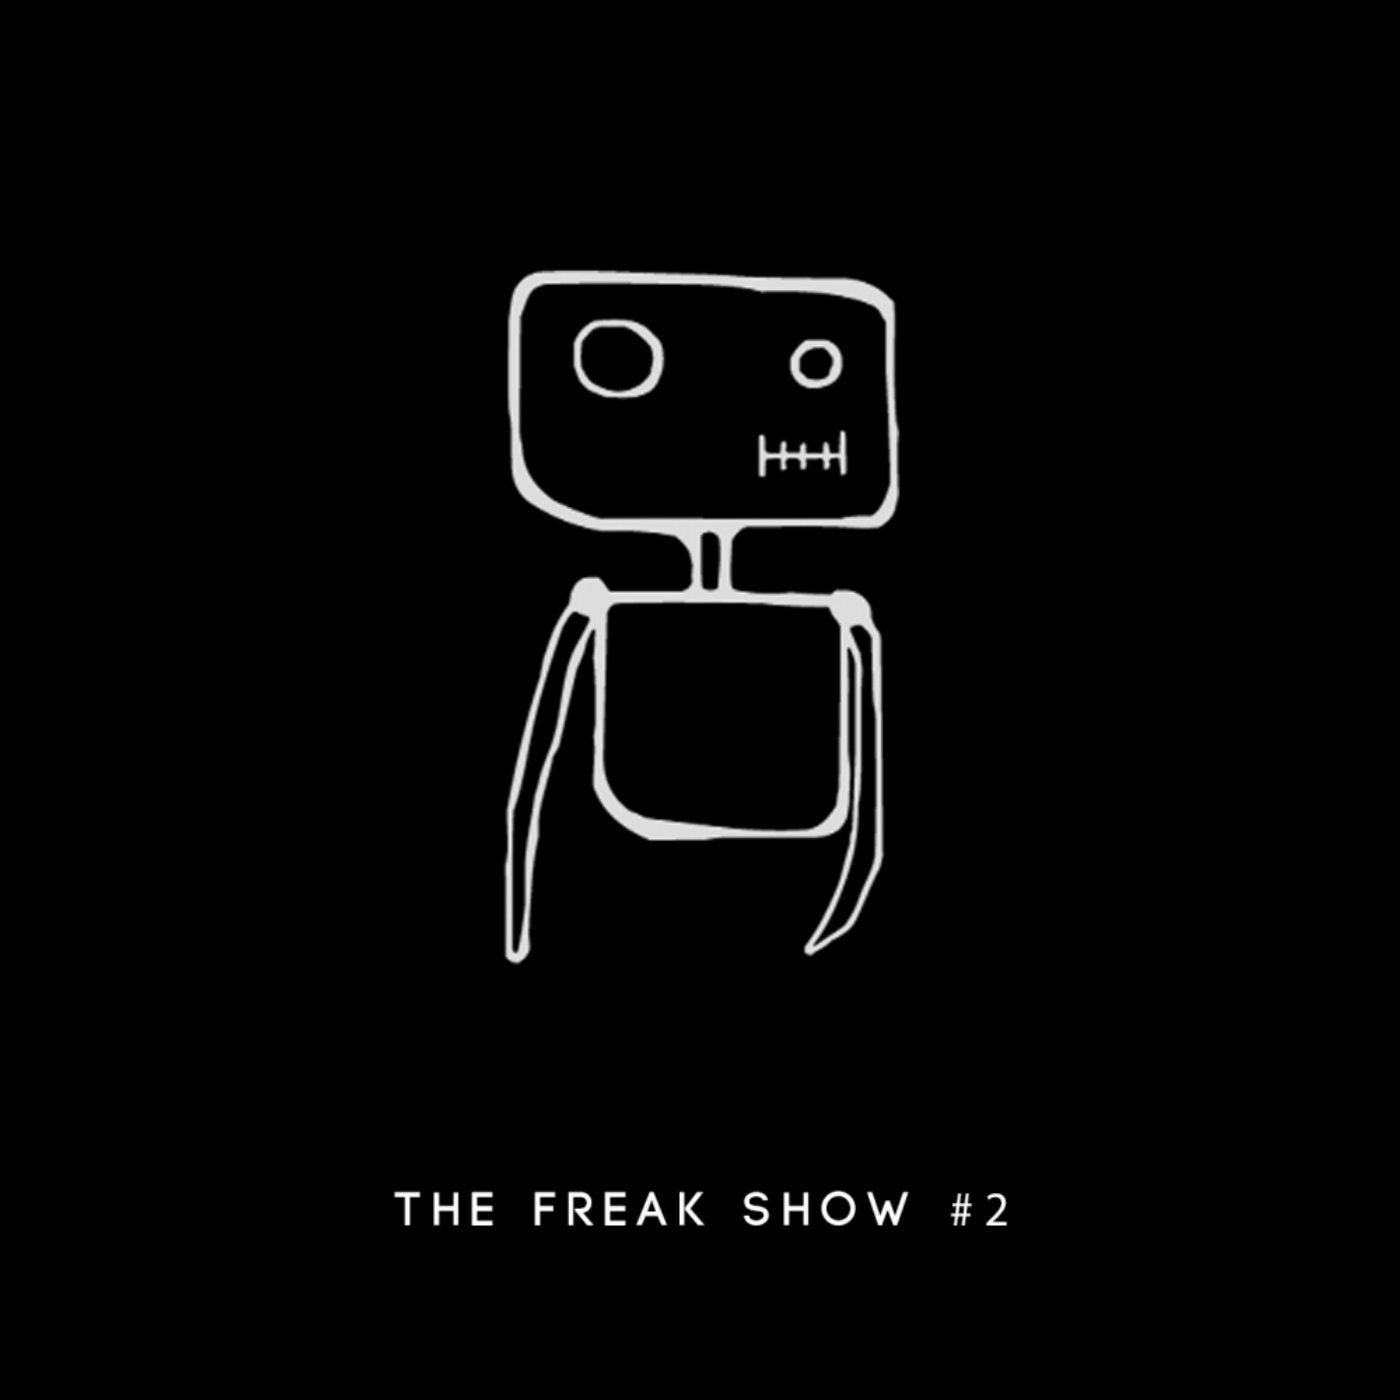 The Freak Show #2